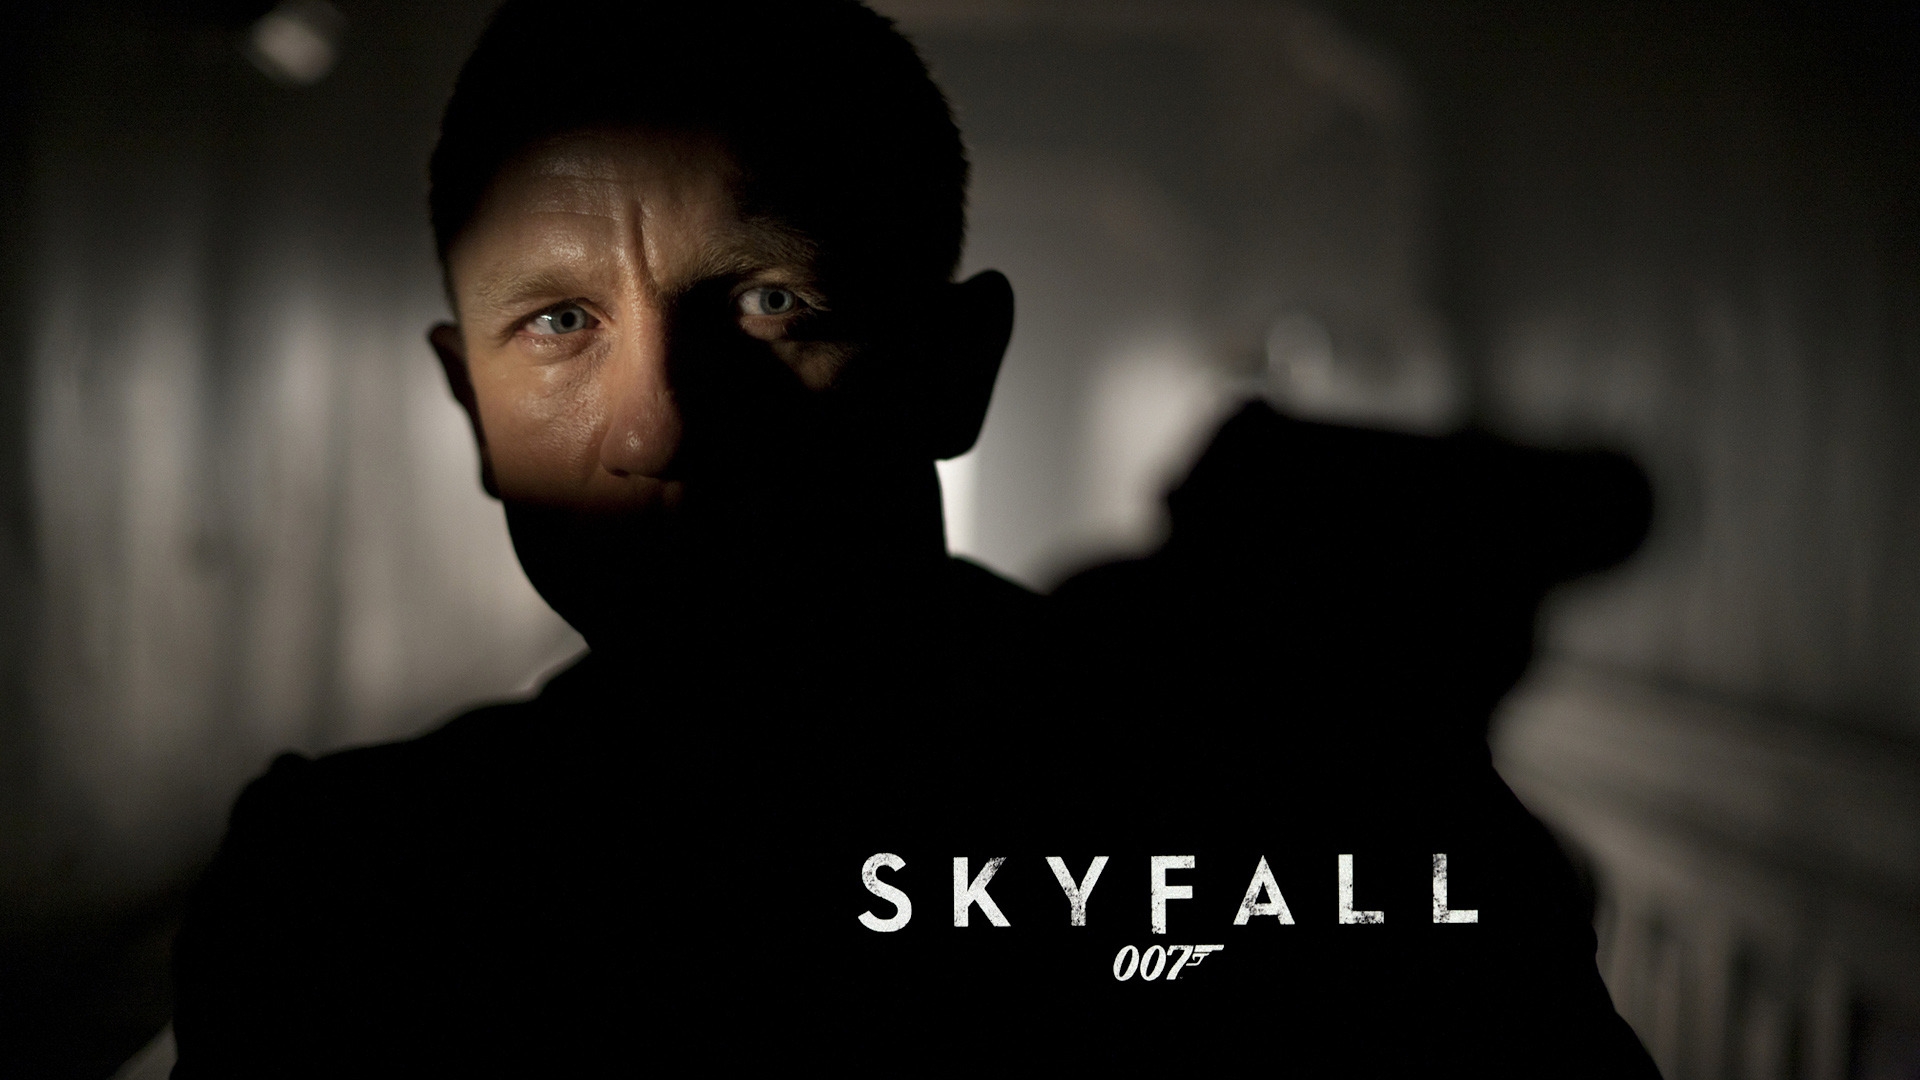 Skyfall 007 for 1920 x 1080 HDTV 1080p resolution